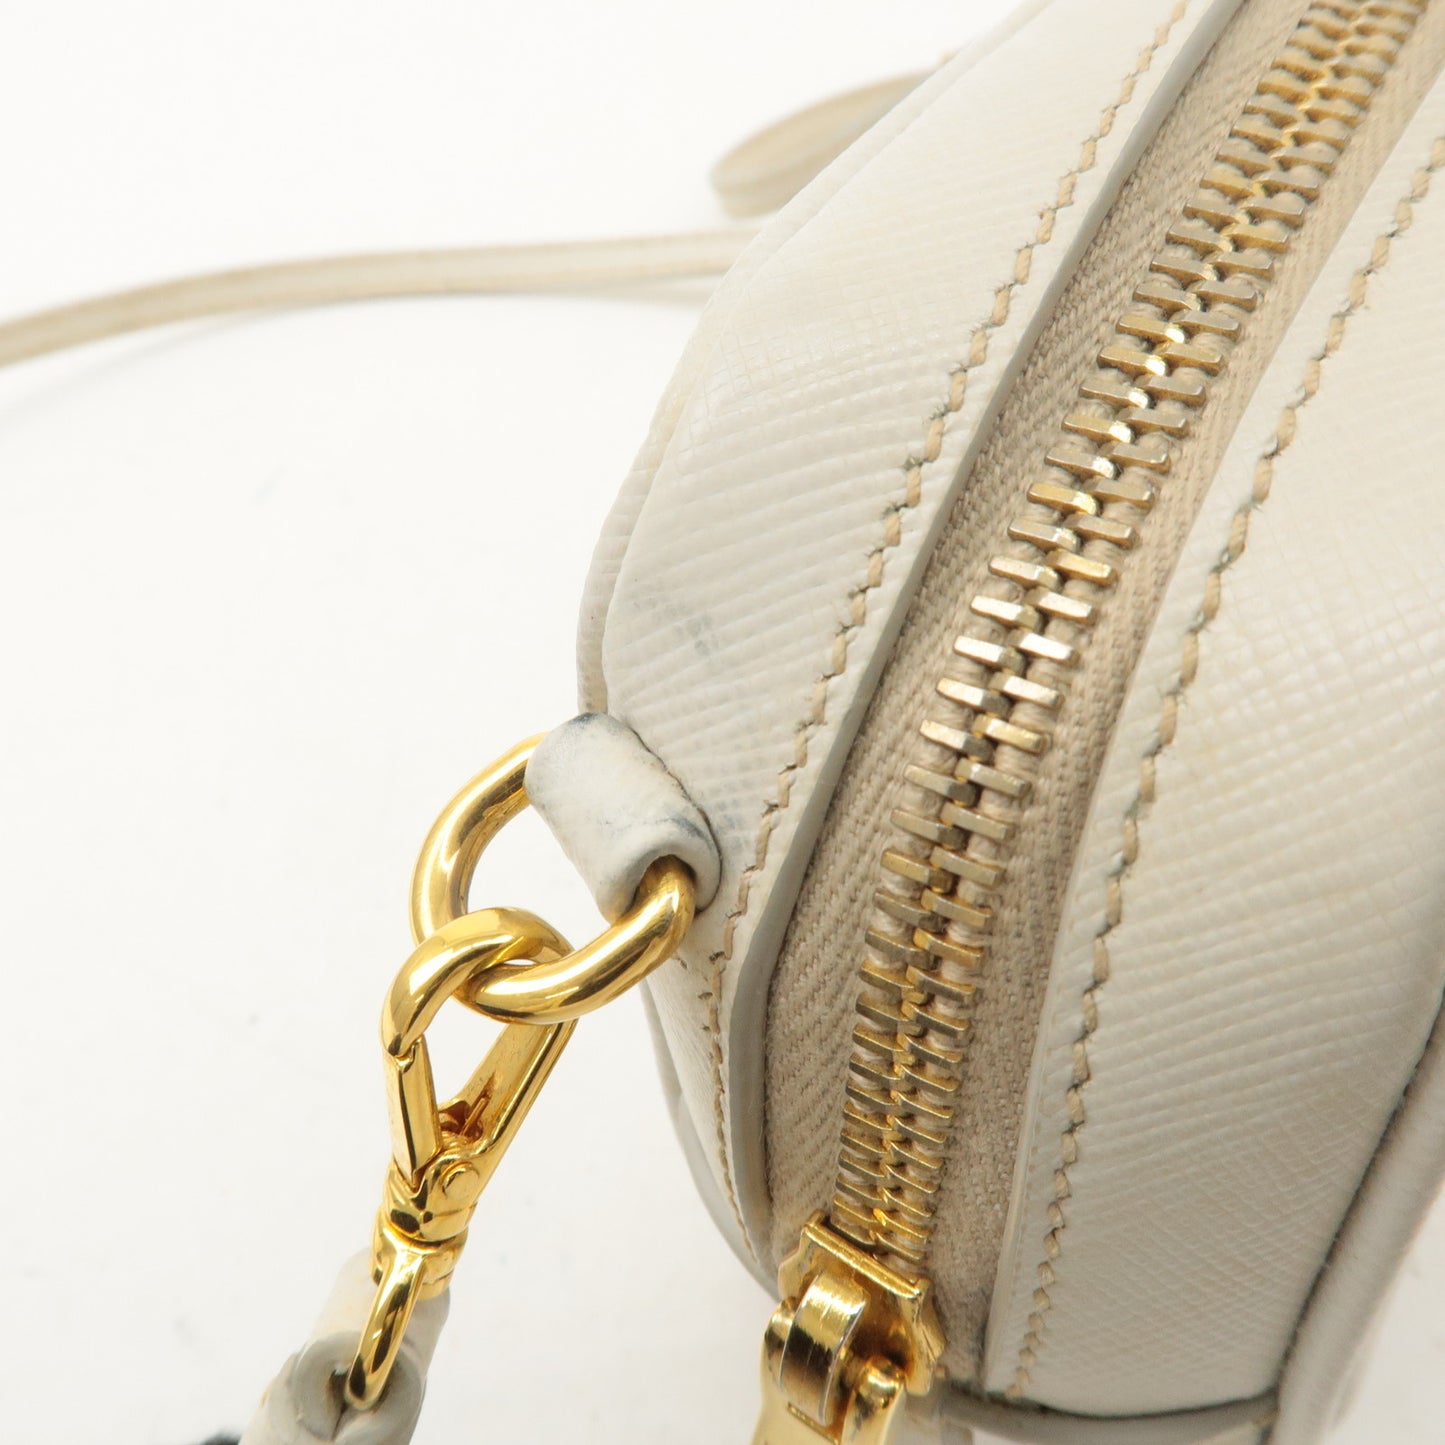 PRADA Logo Saffiano Leather Shoulder Bag Crossbody Bag White